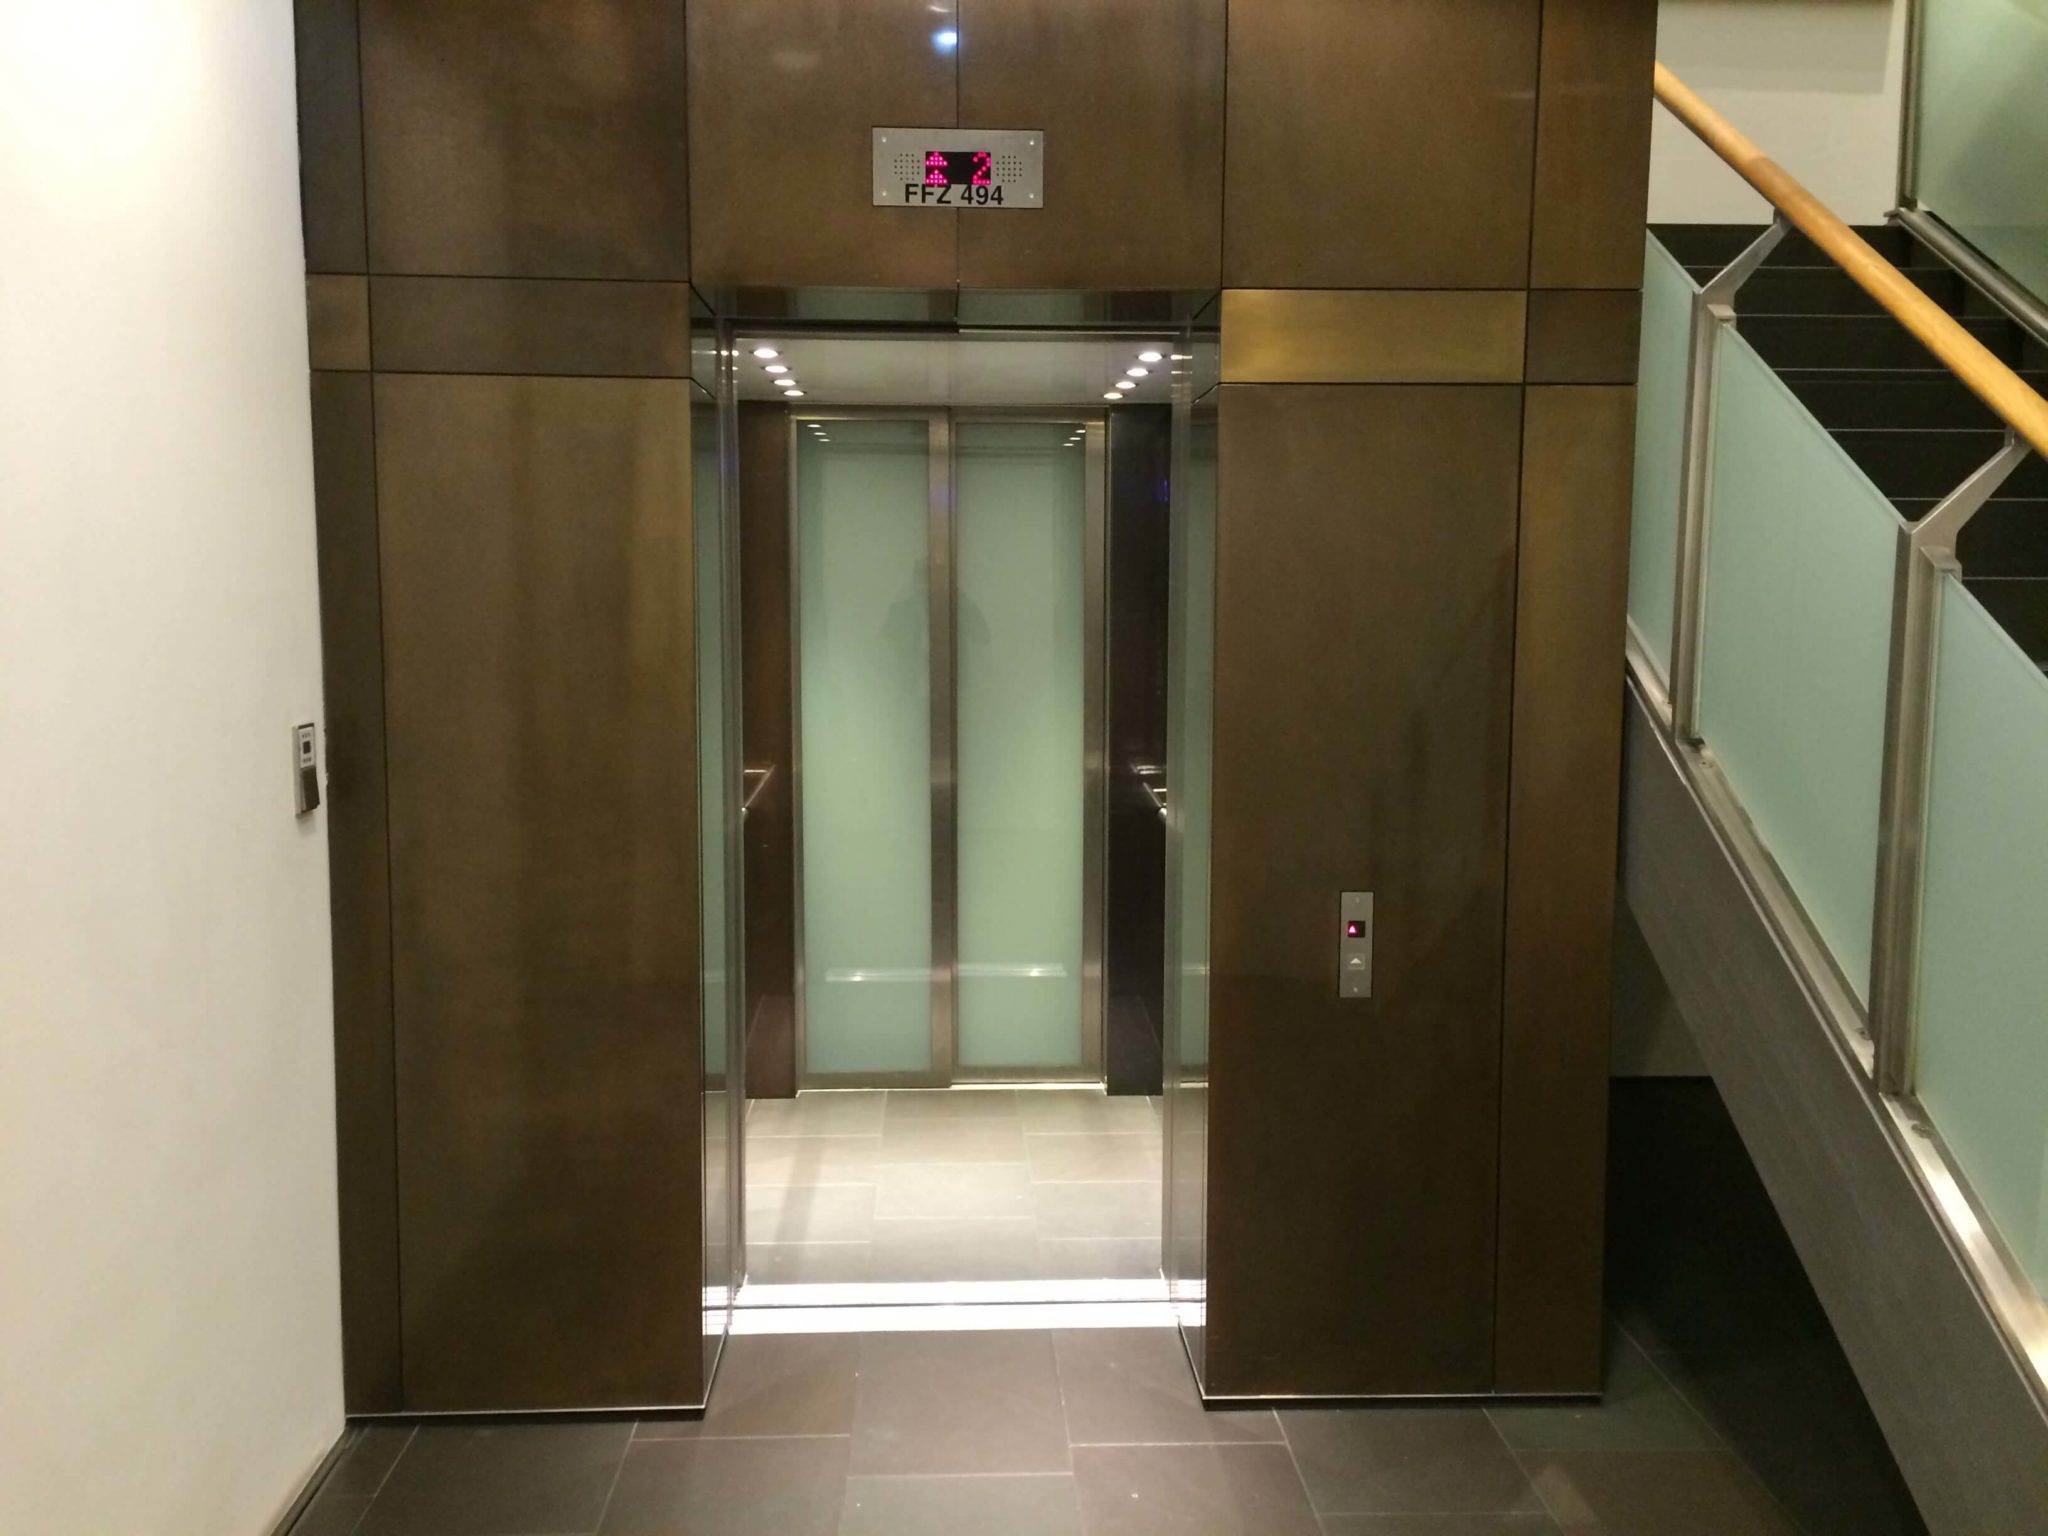 Lufthansa First Class Lounge, ascensor